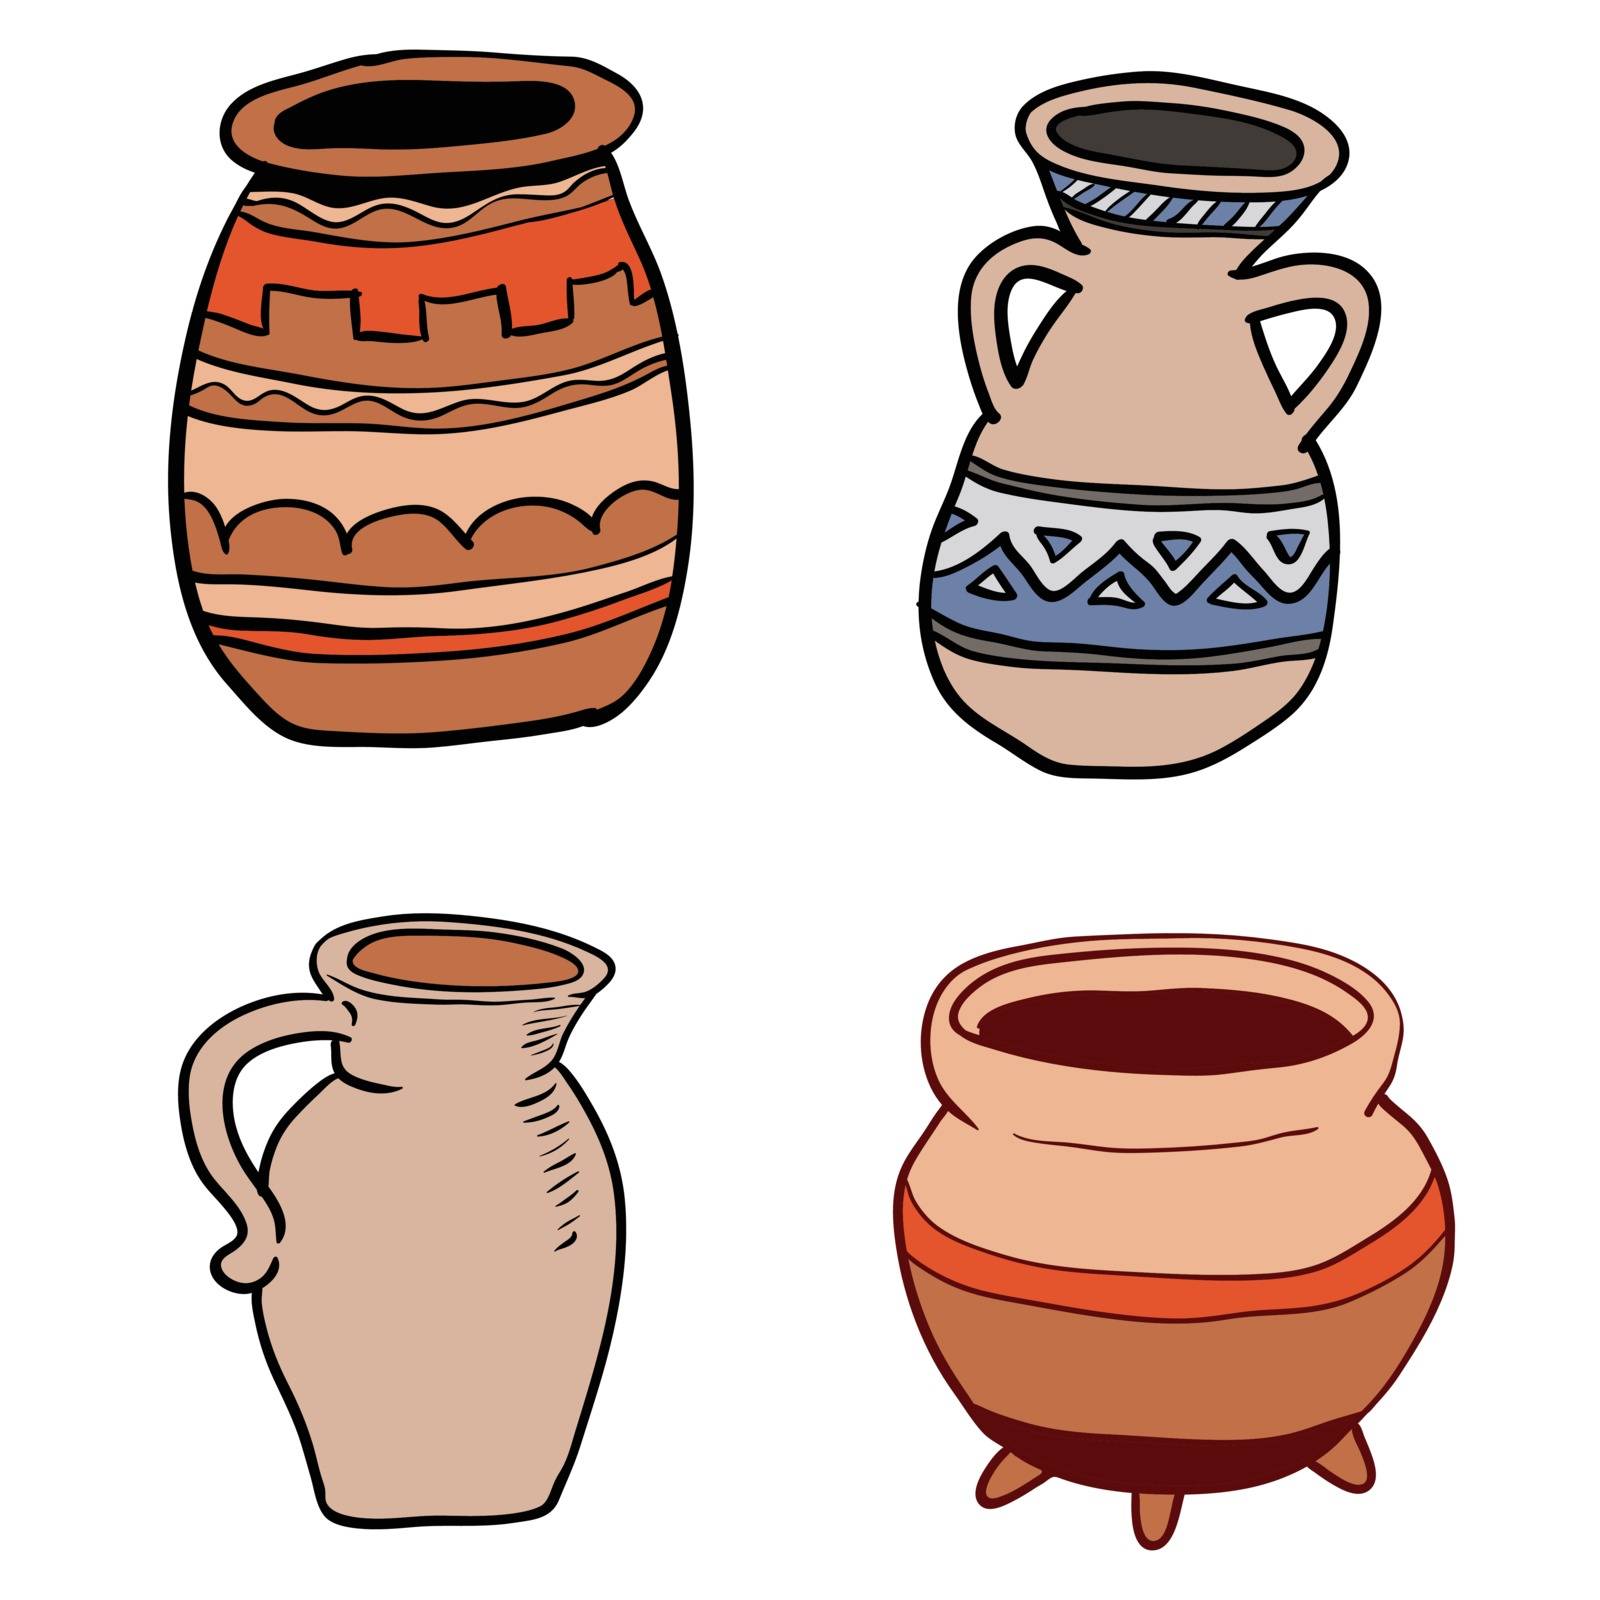 Illustration of Old Ceramic Utensils-Vector Illustration by solargaria